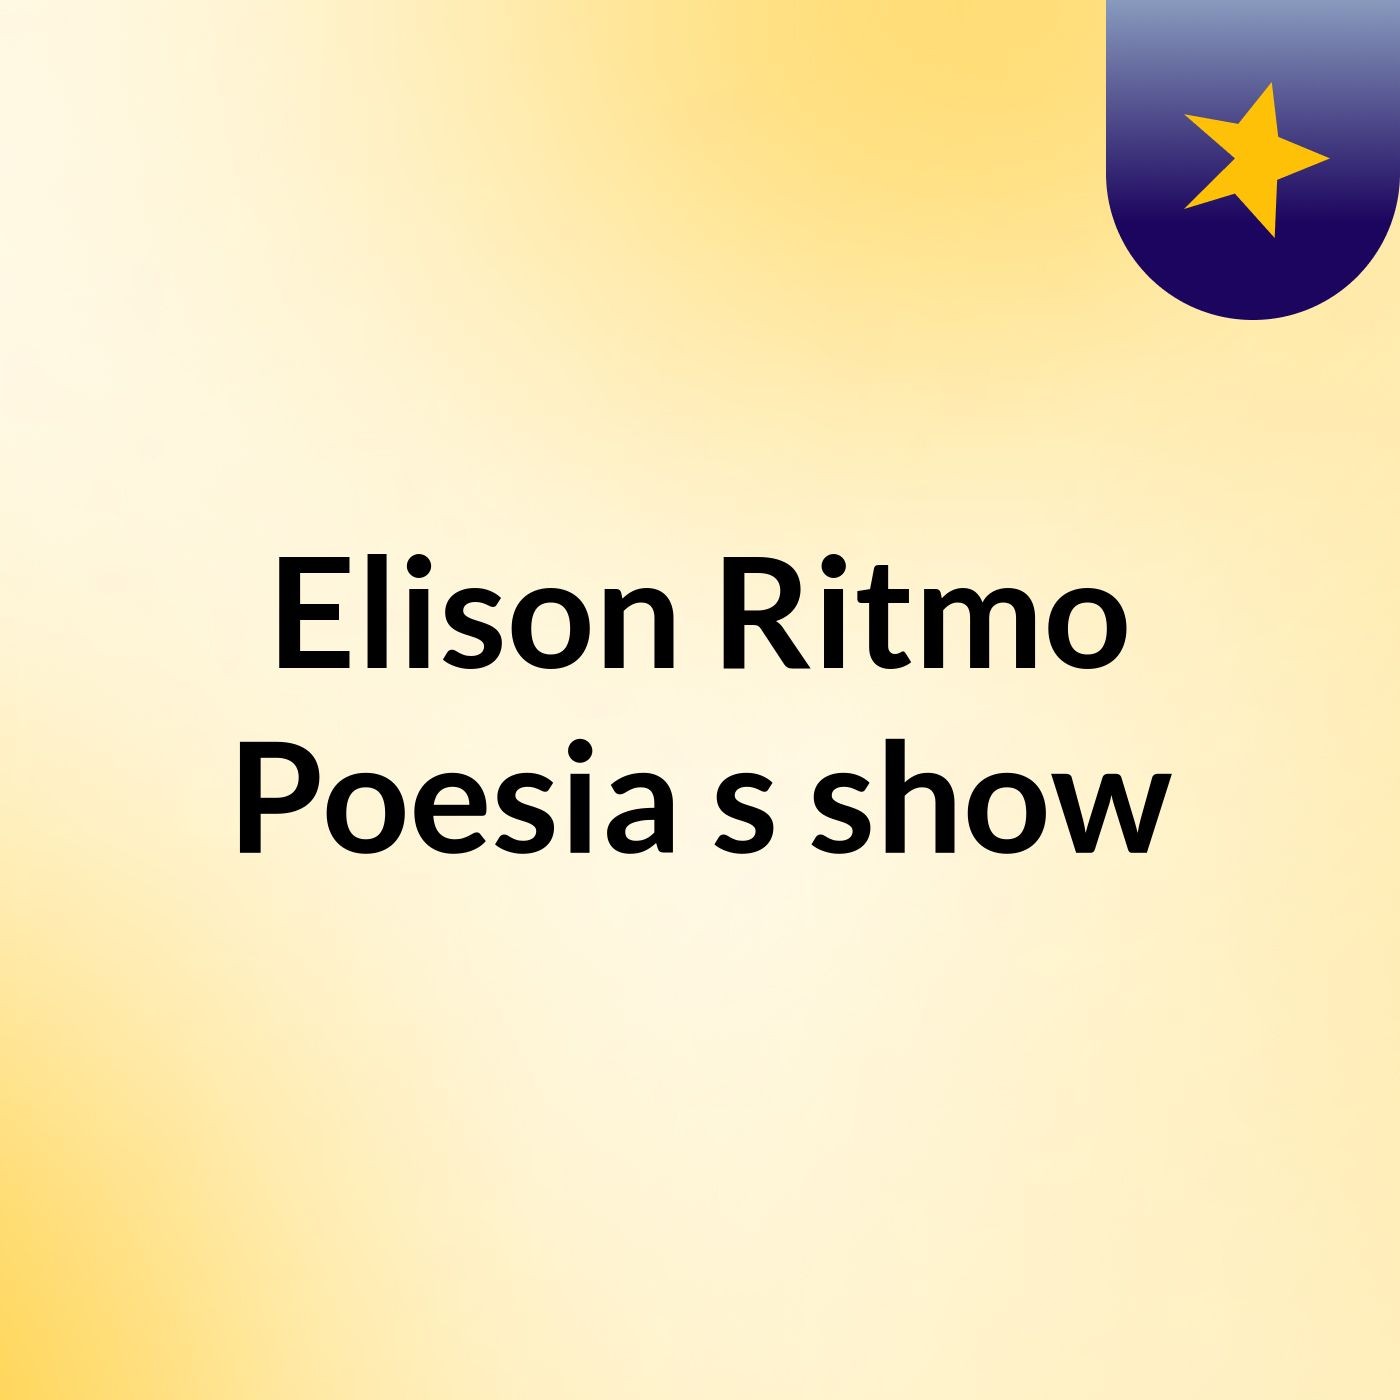 Elison Ritmo Poesia's show